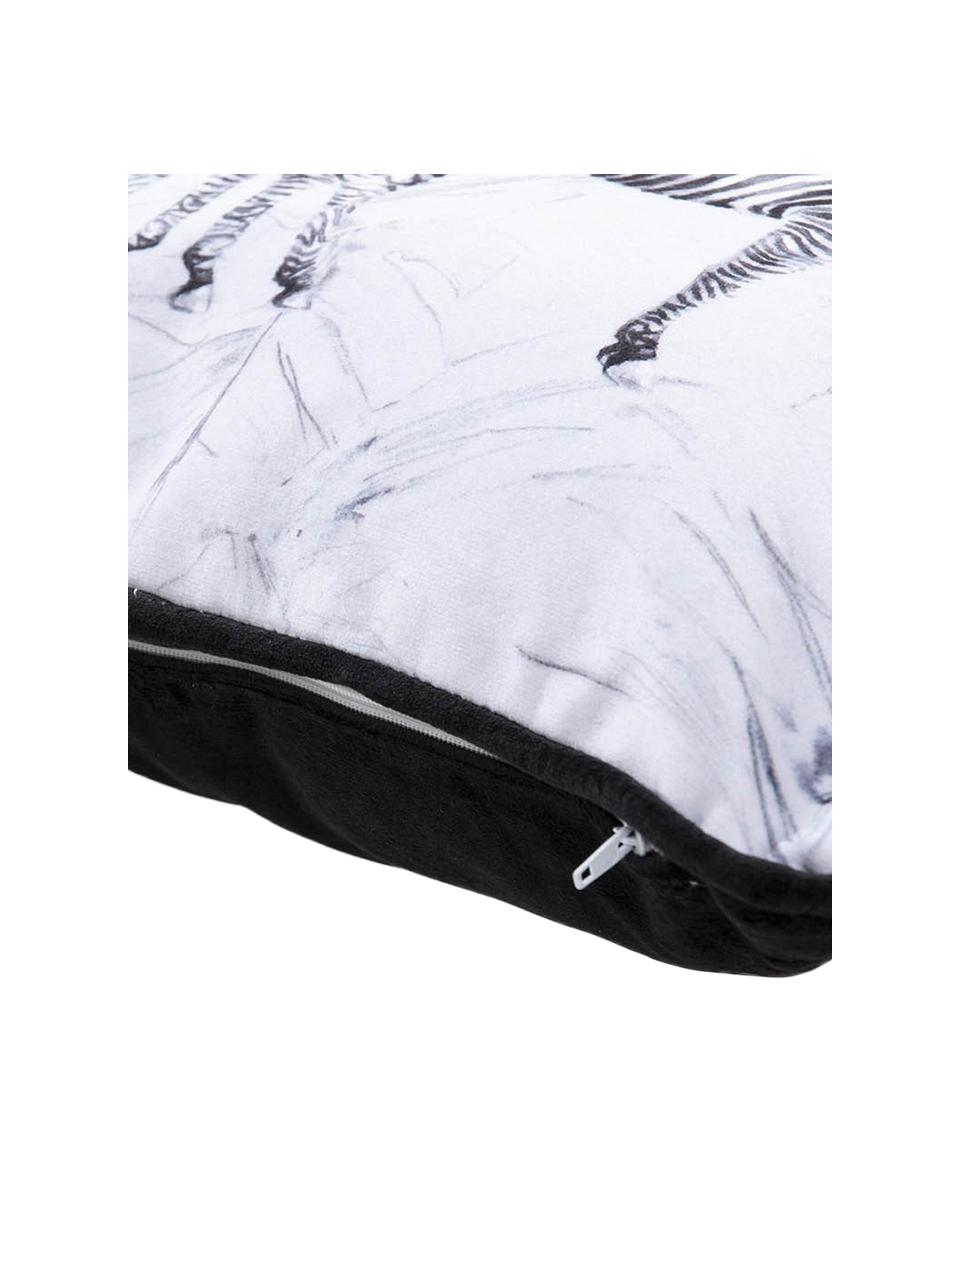 Poduszka z aksamitu z wypełnieniem Zebra, Aksamit poliestrowy, Biały, czarny, S 30 x D 45 cm